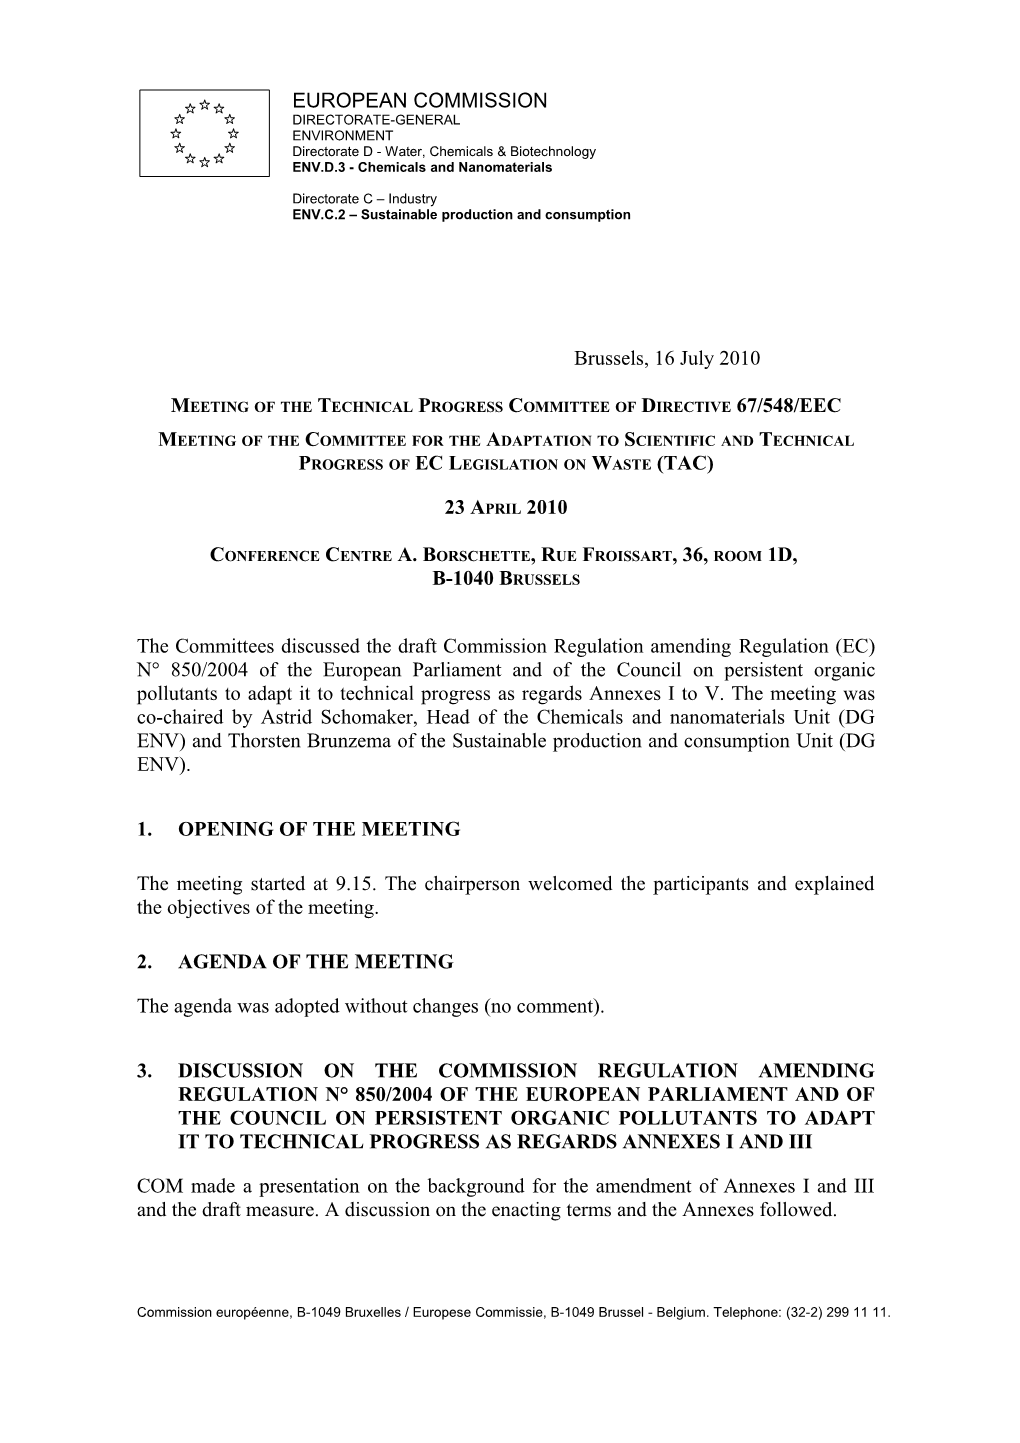 Meeting of the Technical Progress Committee of Directive 67/548/EEC